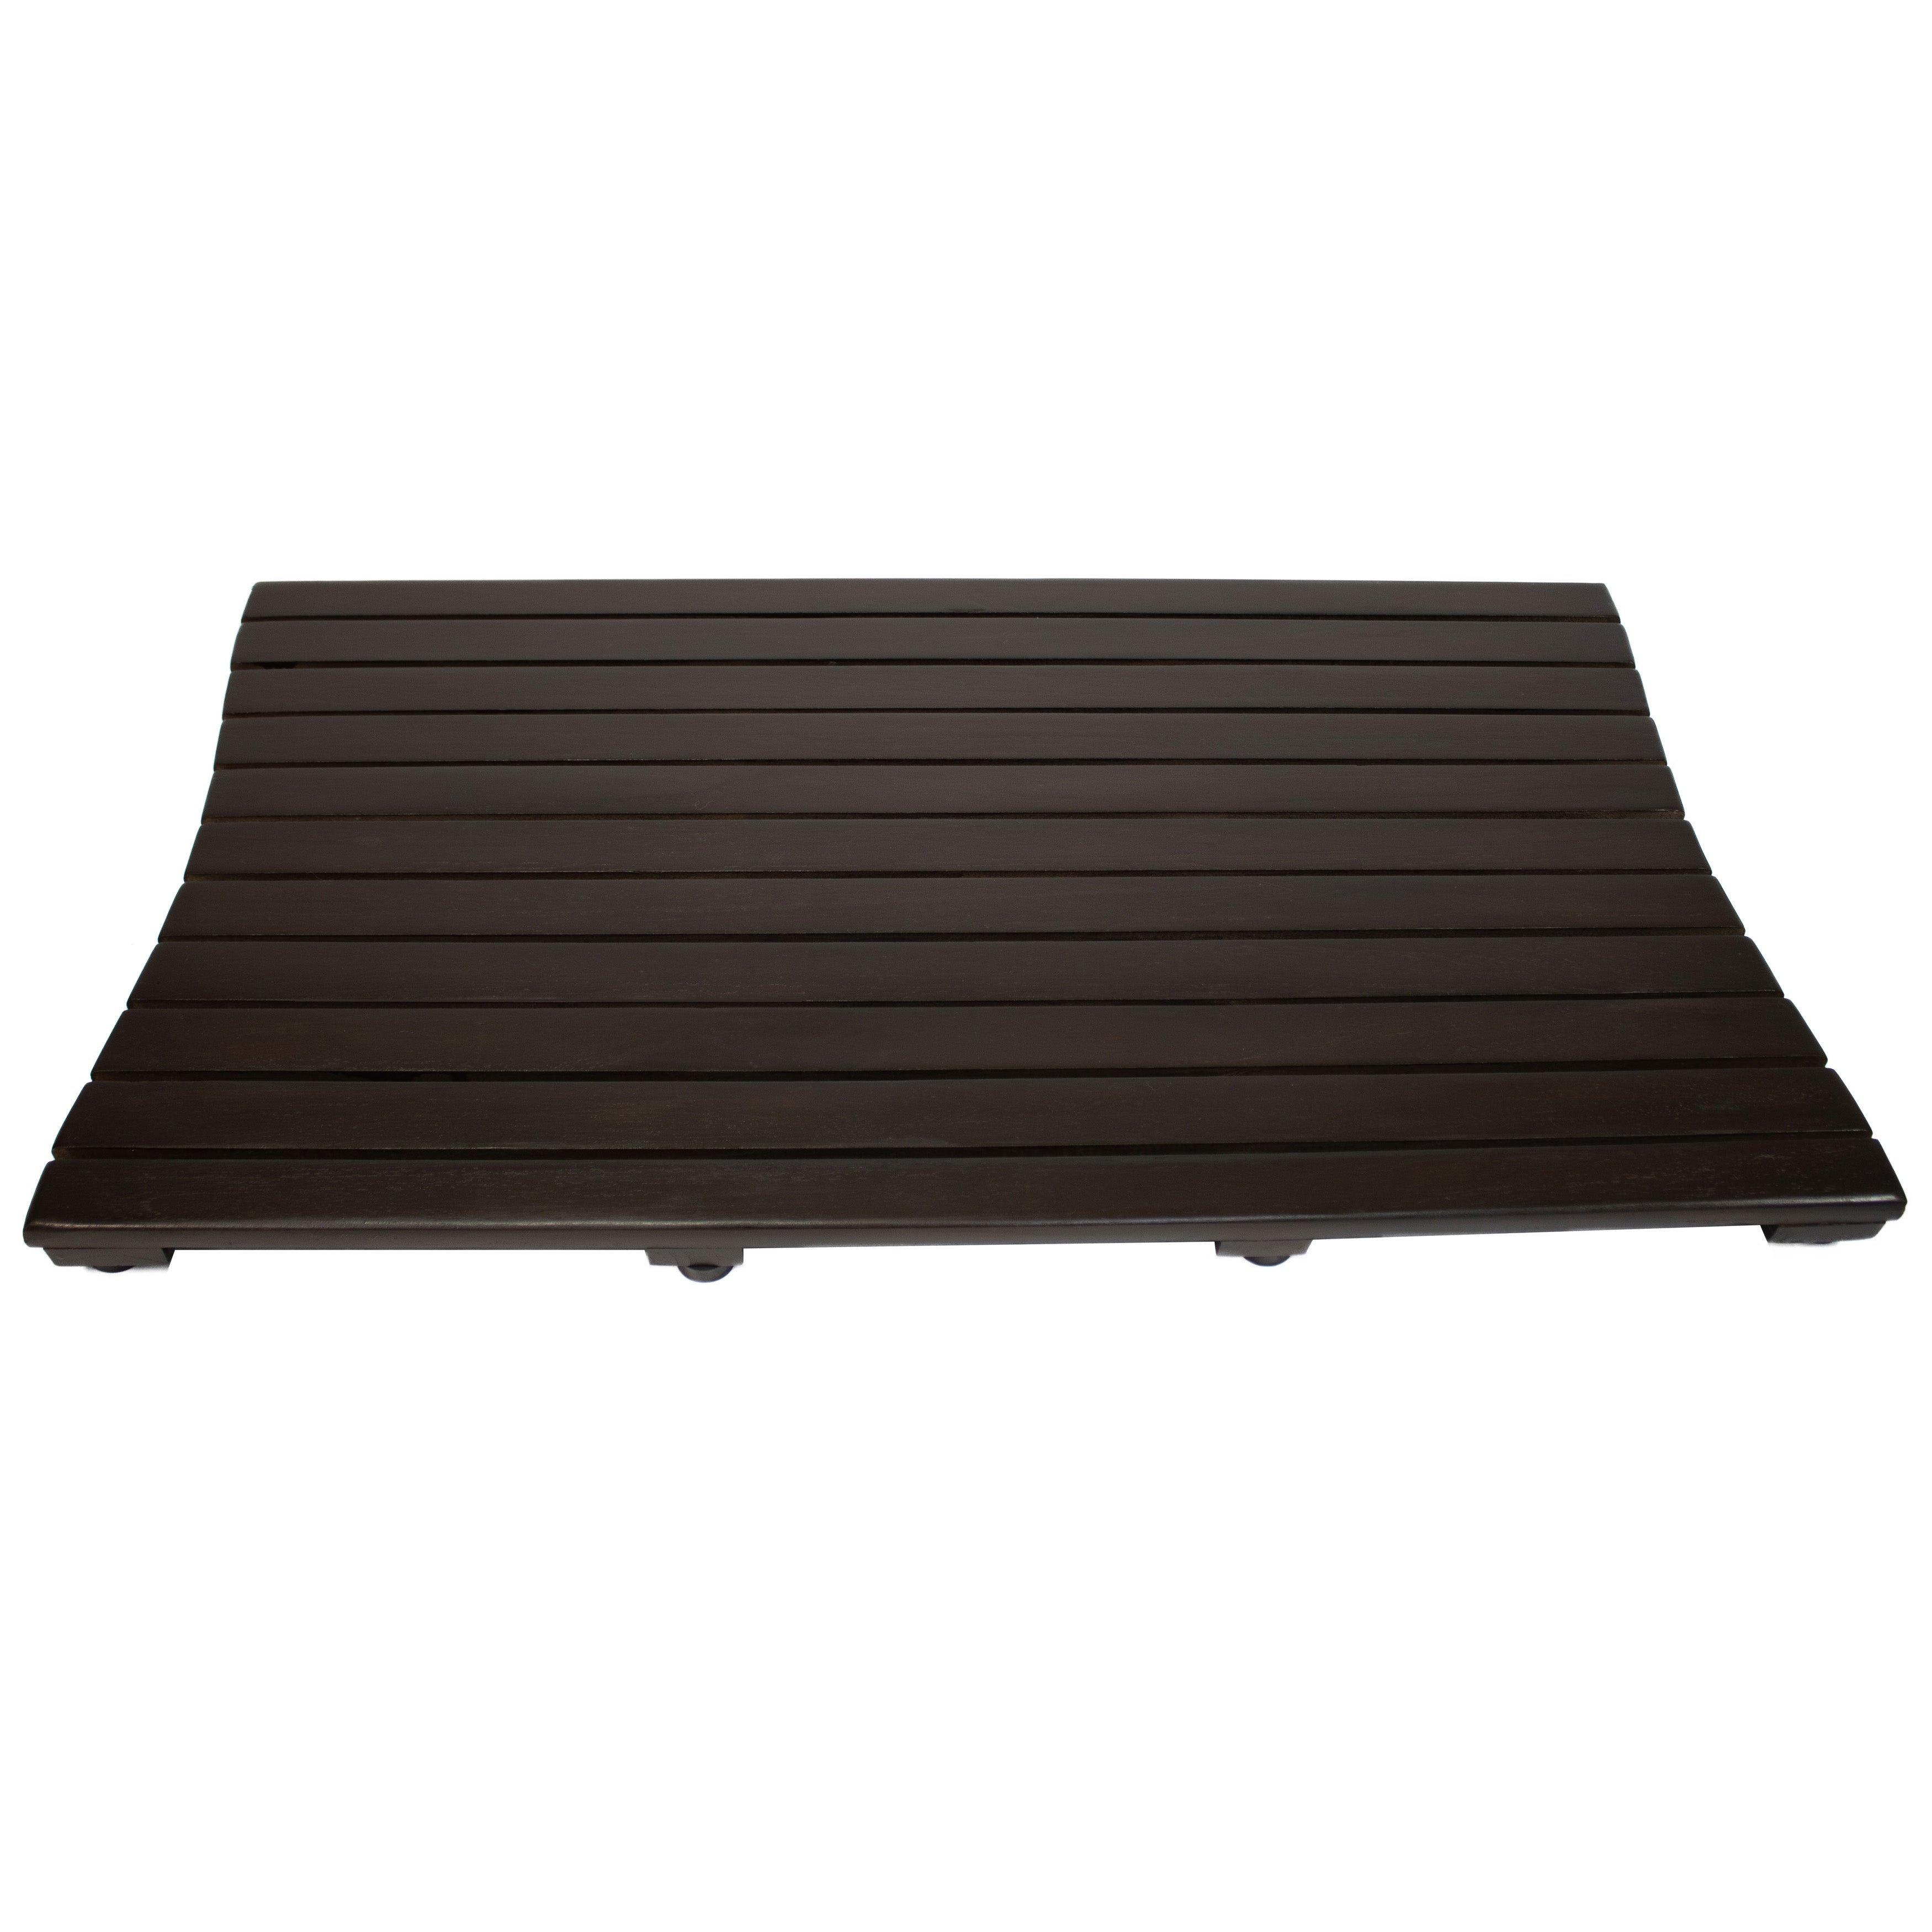 DecoTeak® Eleganto® 40”W Teak Floor Mat in Woodland Brown Finish